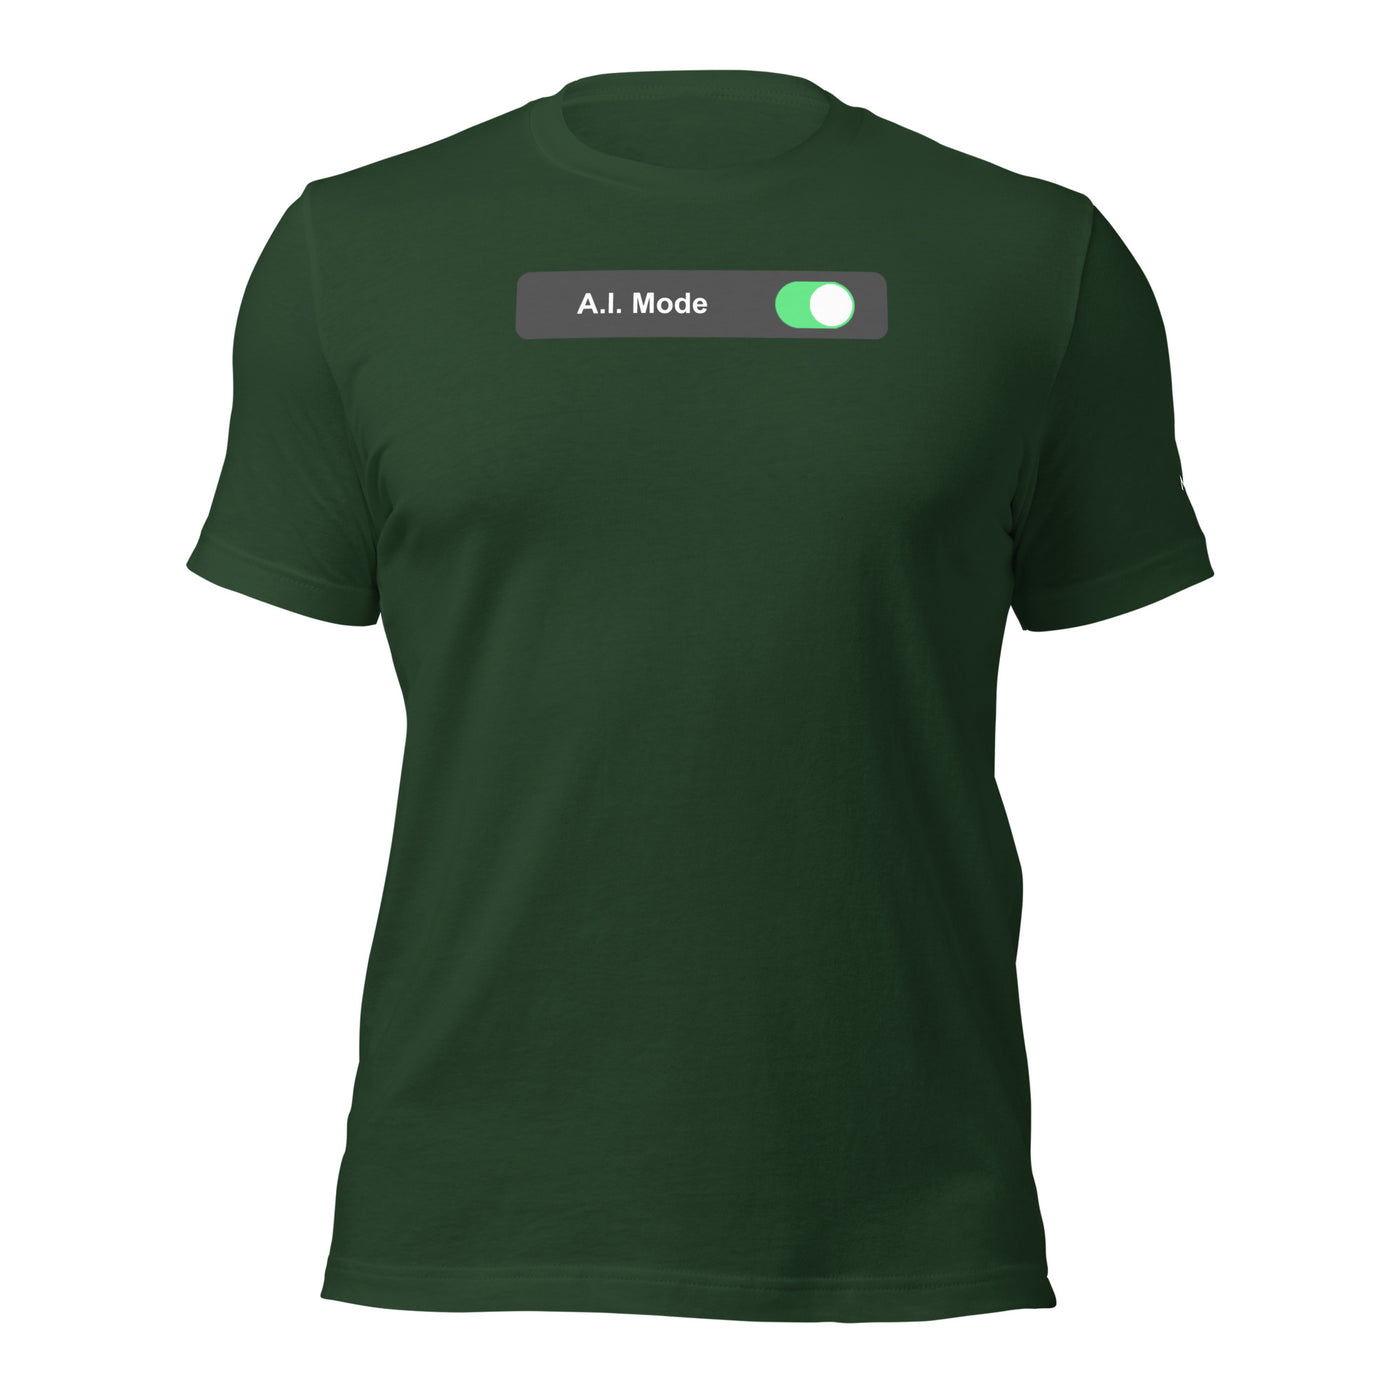 AI mode On - Unisex t-shirt